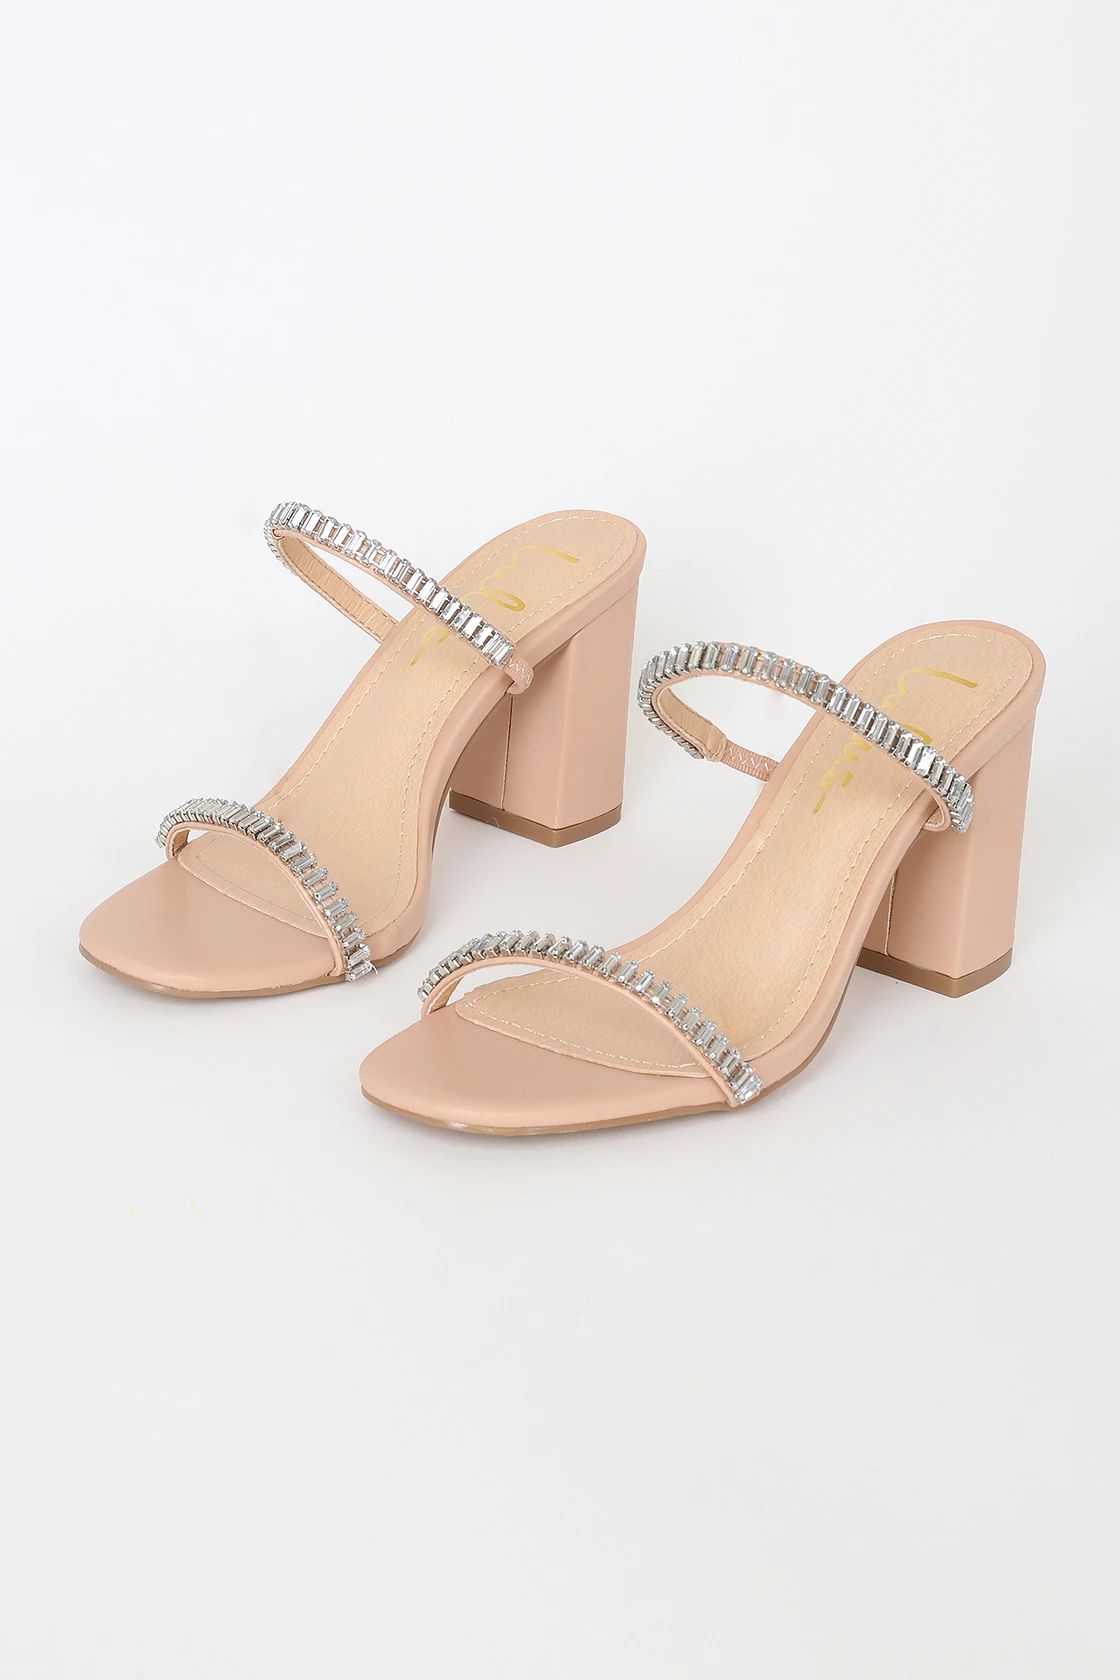 Avariaa Nude Rhinestone High Heel Sandals | Lulus